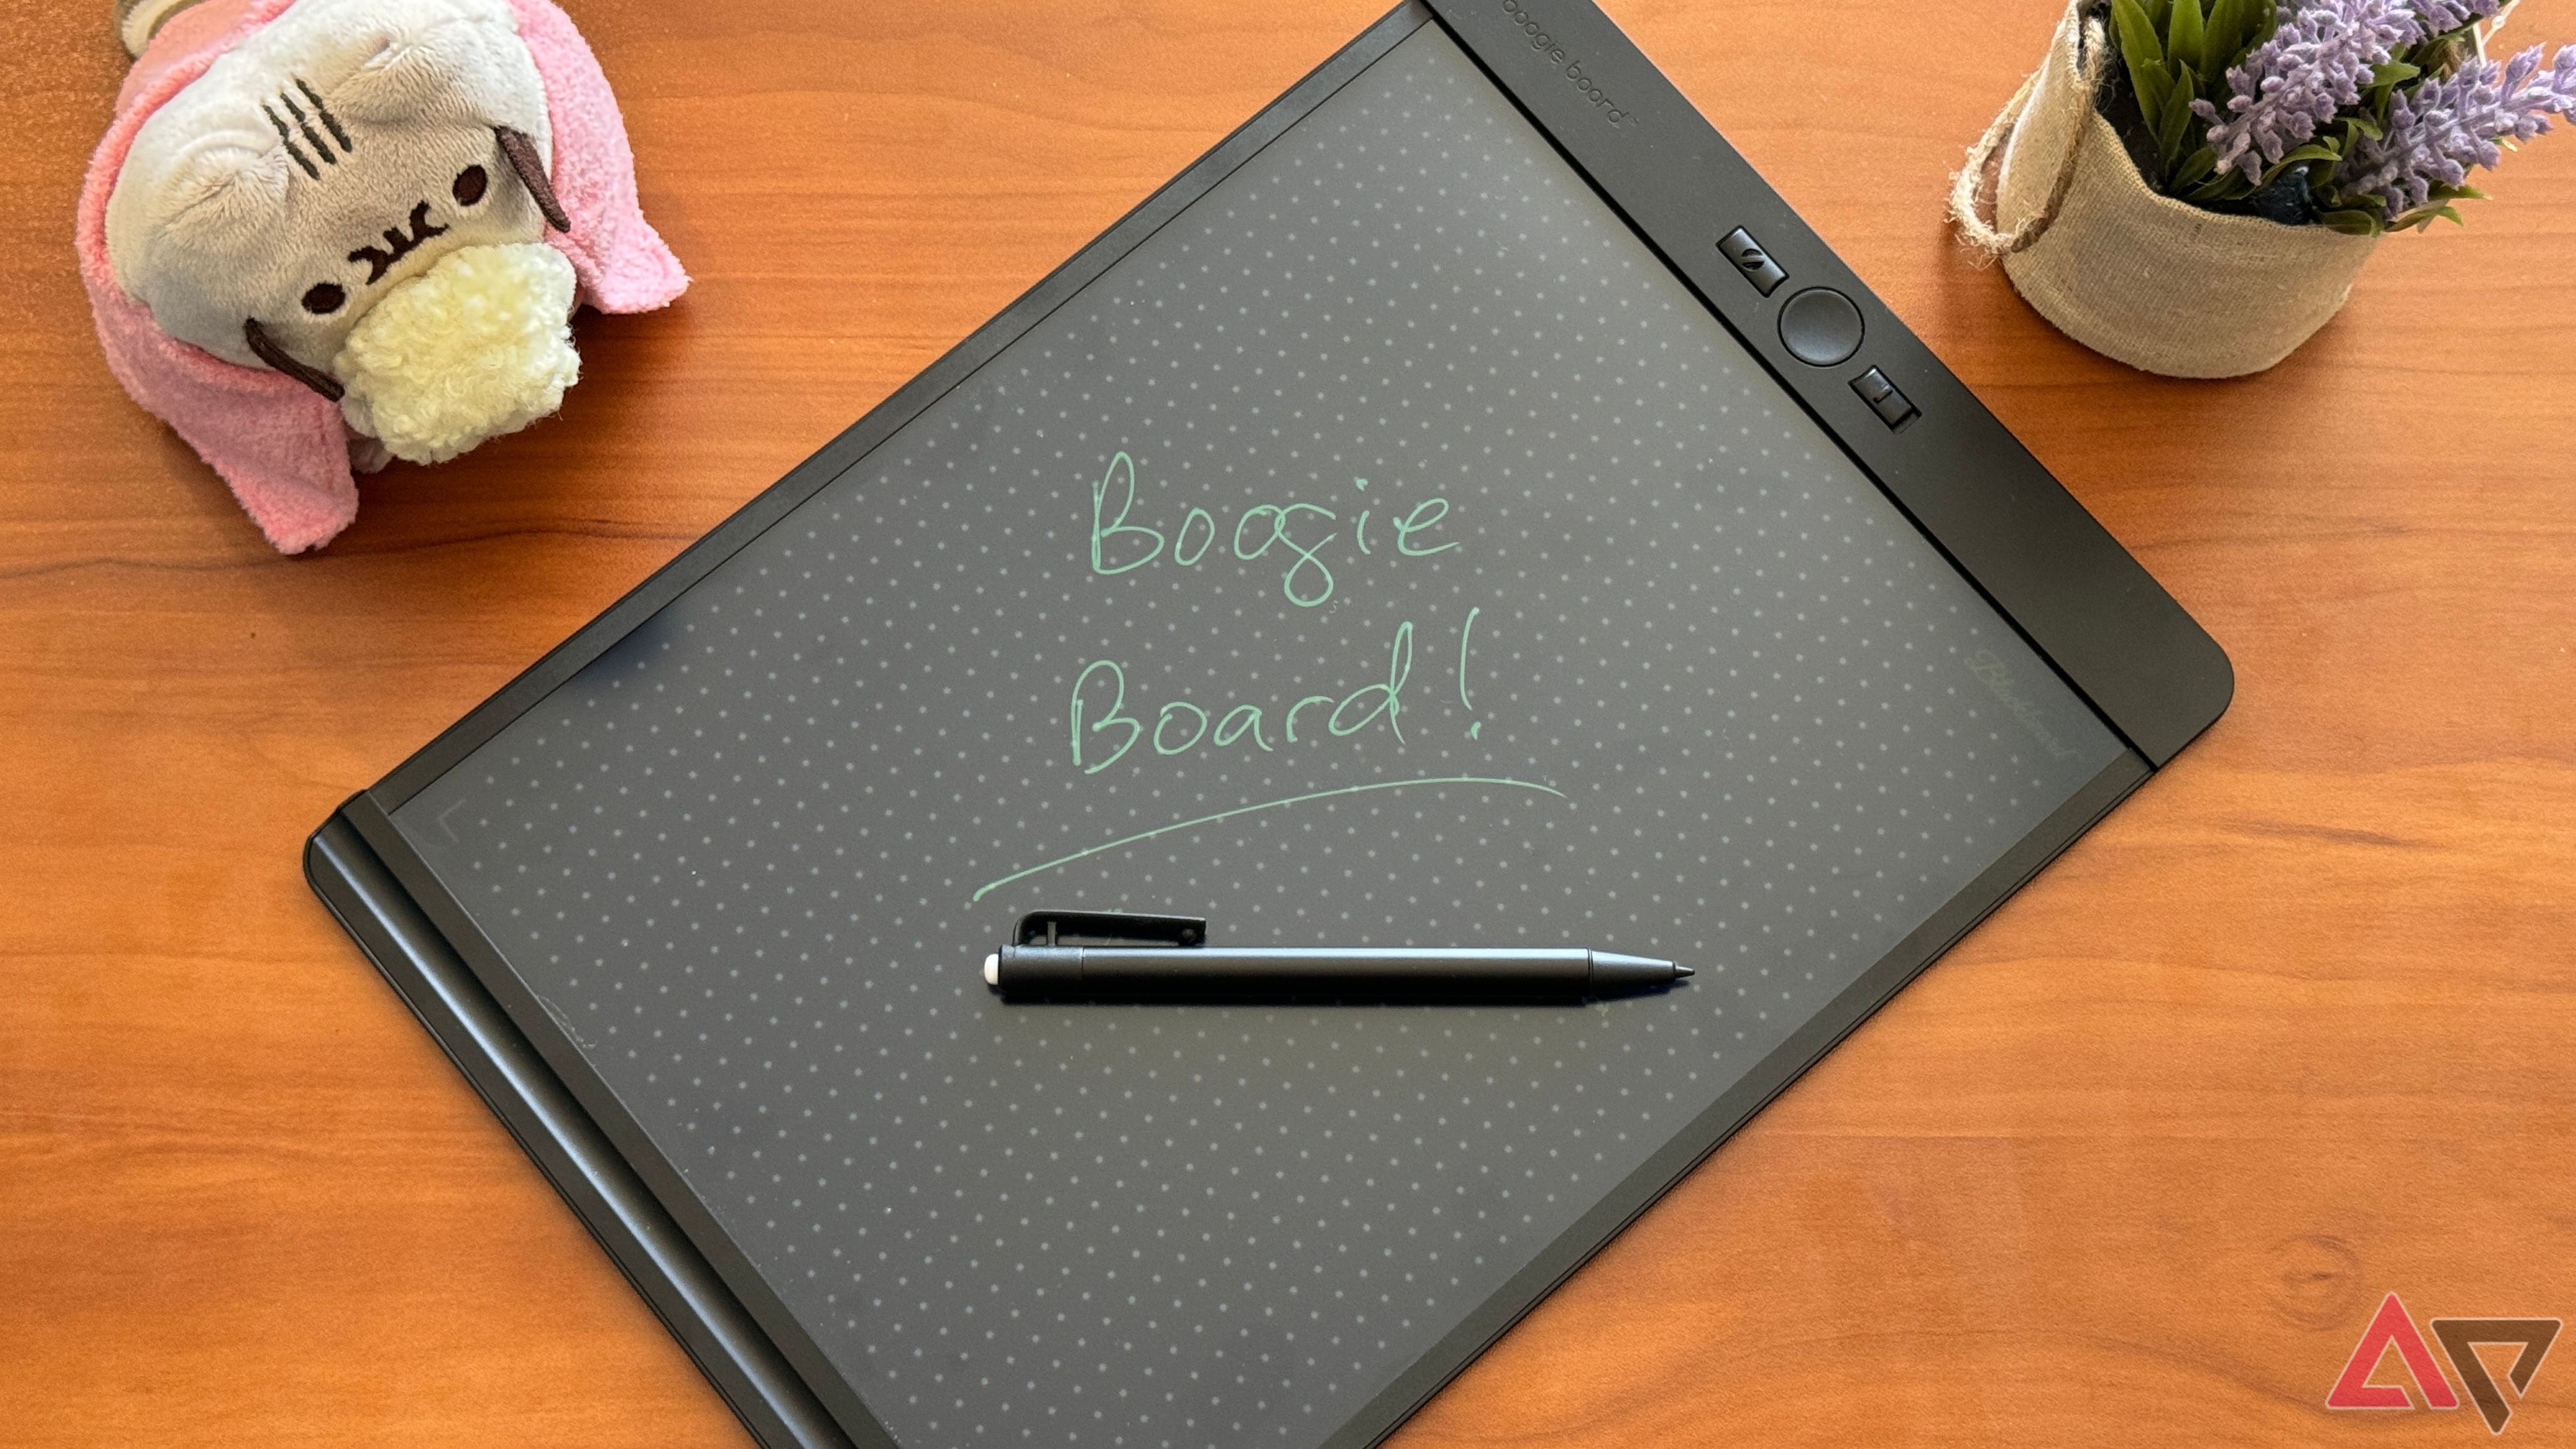 Writing on the Boogie Board Blackboard LCD screen